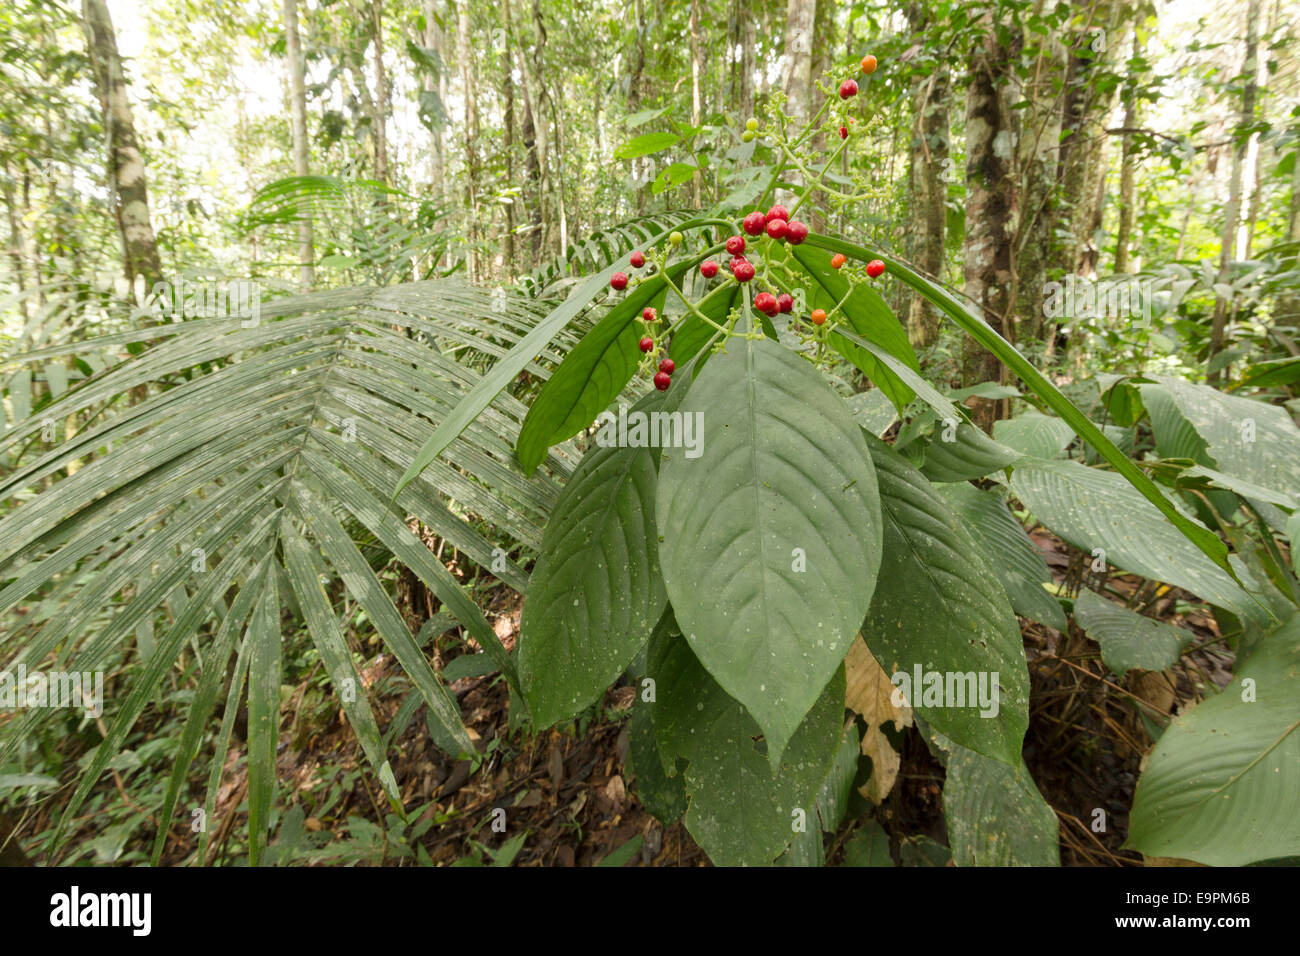 El sotobosque de arbustos con bayas rojas maduras en la selva tropical en el Amazonas ecuatoriano. Foto de stock